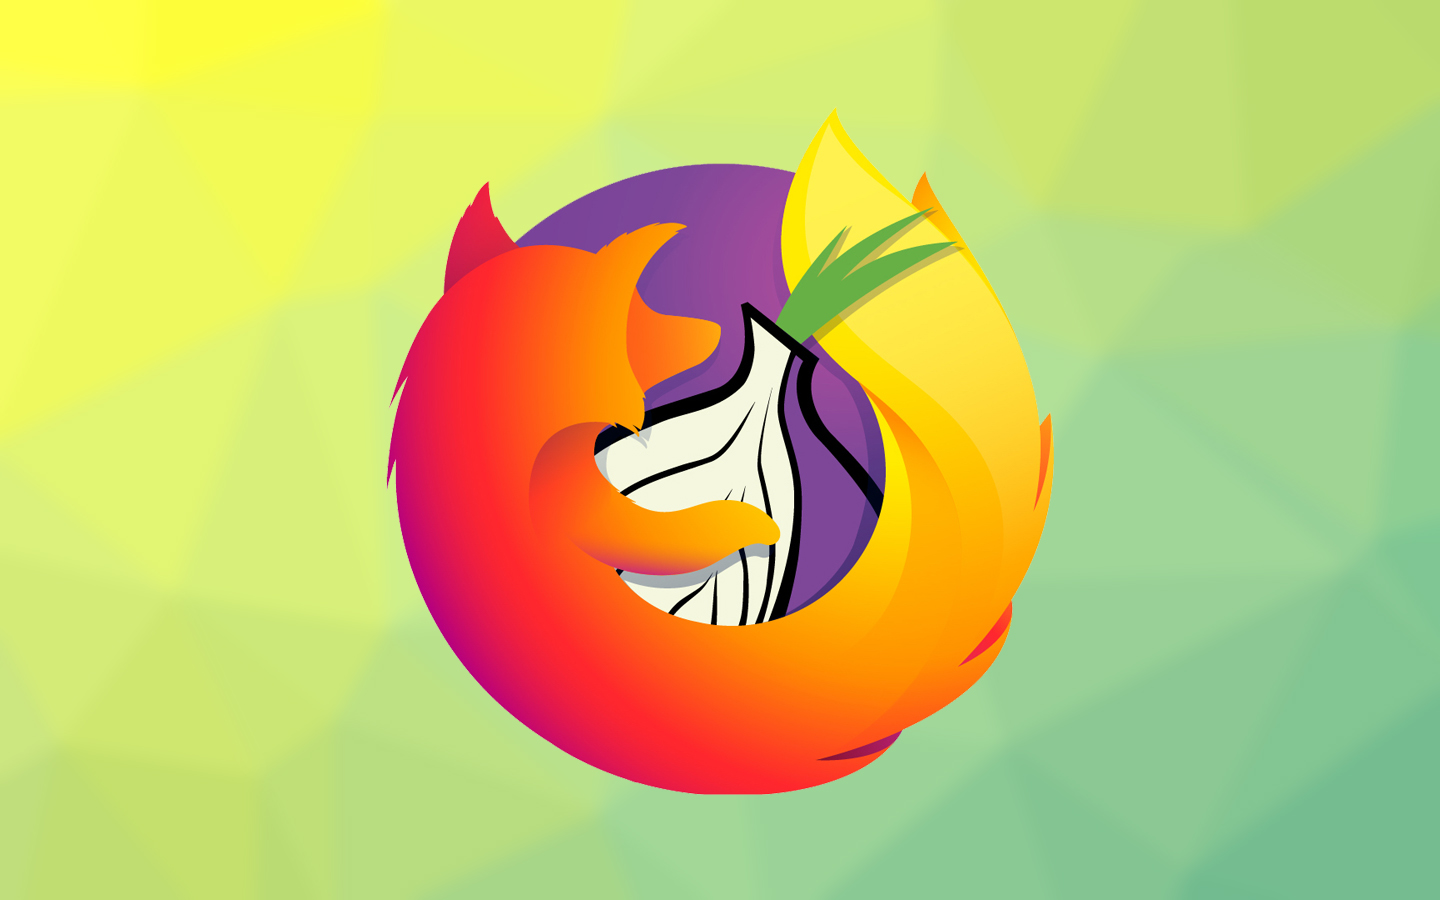 Браузер тор для фаерфокс hyrda tor browser for linux скачать бесплатно русская версия вход на гидру